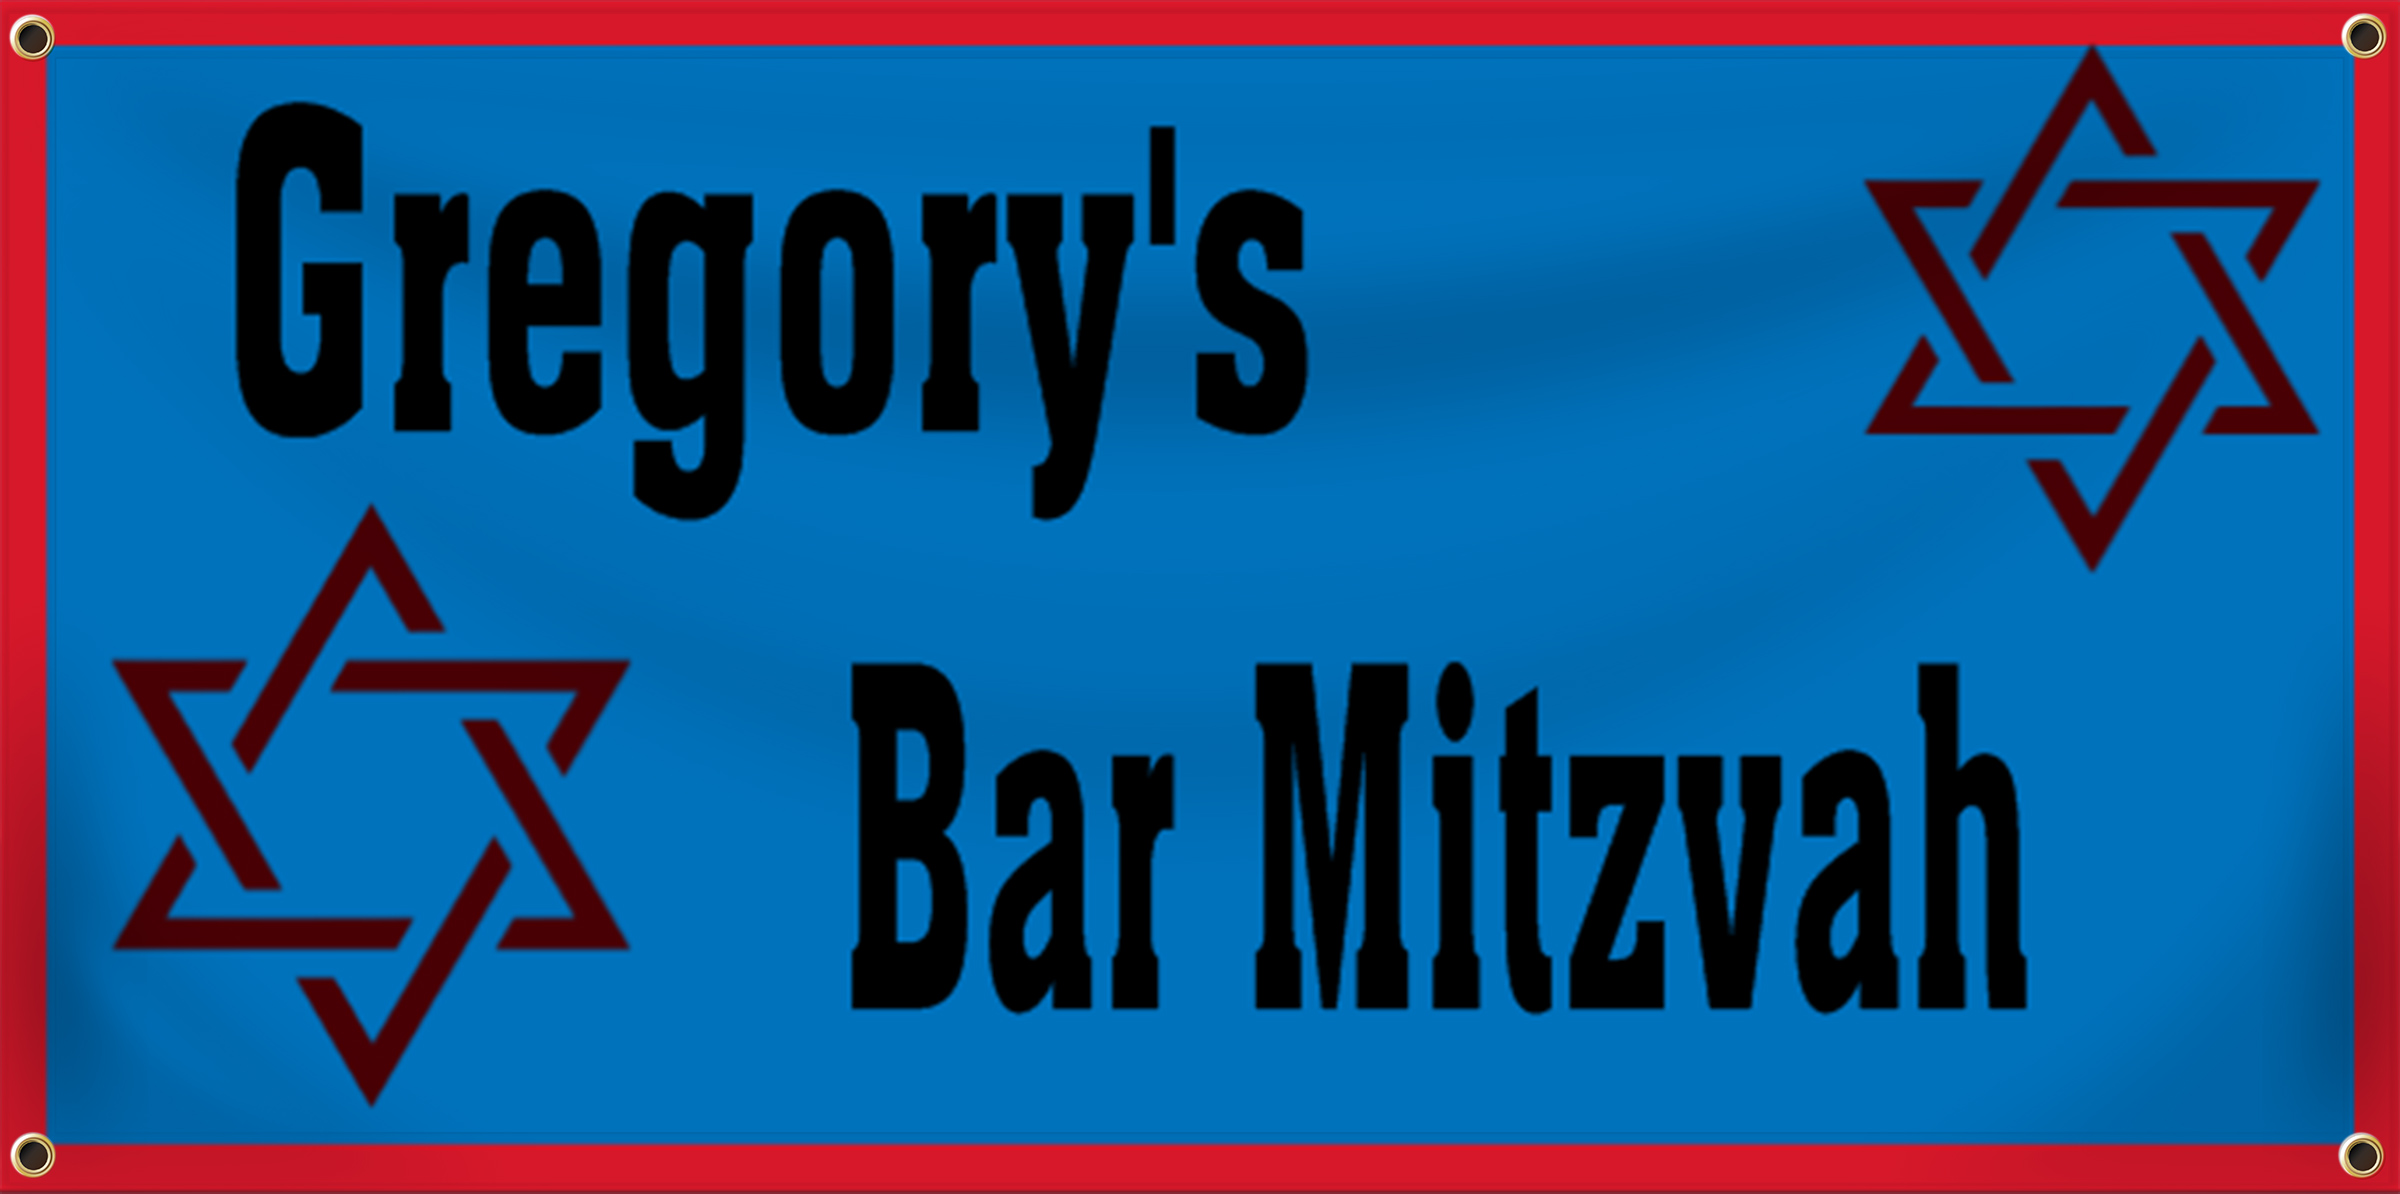 Bar & Bat Mitzvah Banner Idea | LawnSigns.com